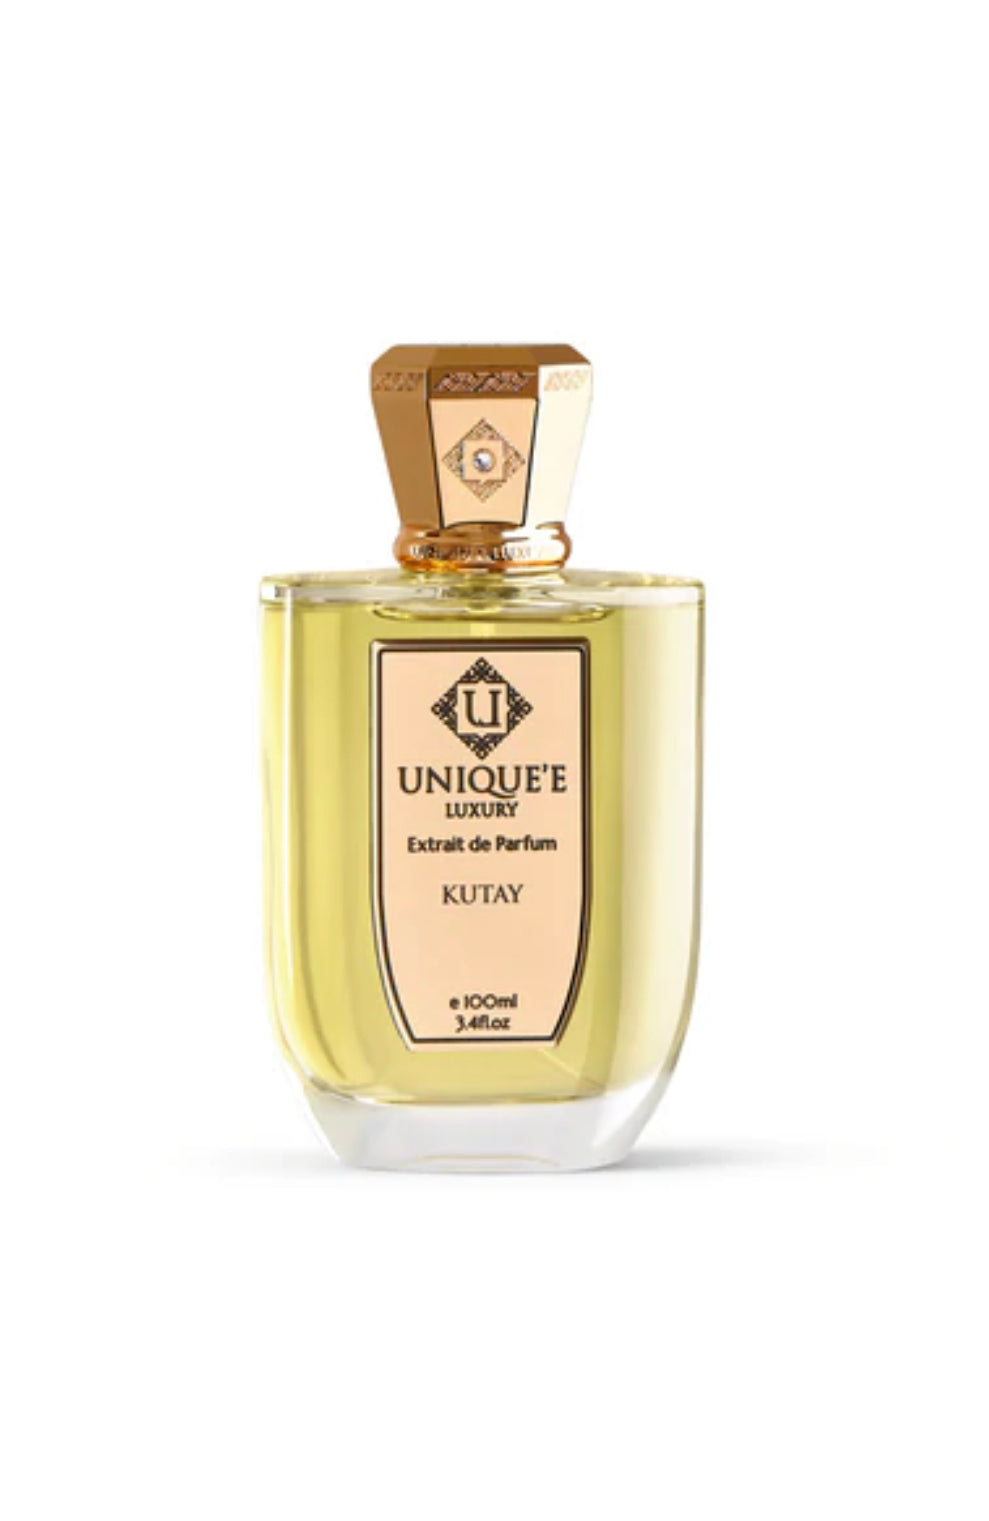 Unique'e Luxury Kutay Extrait De Parfum 100ML – Imperial Fragrances UK